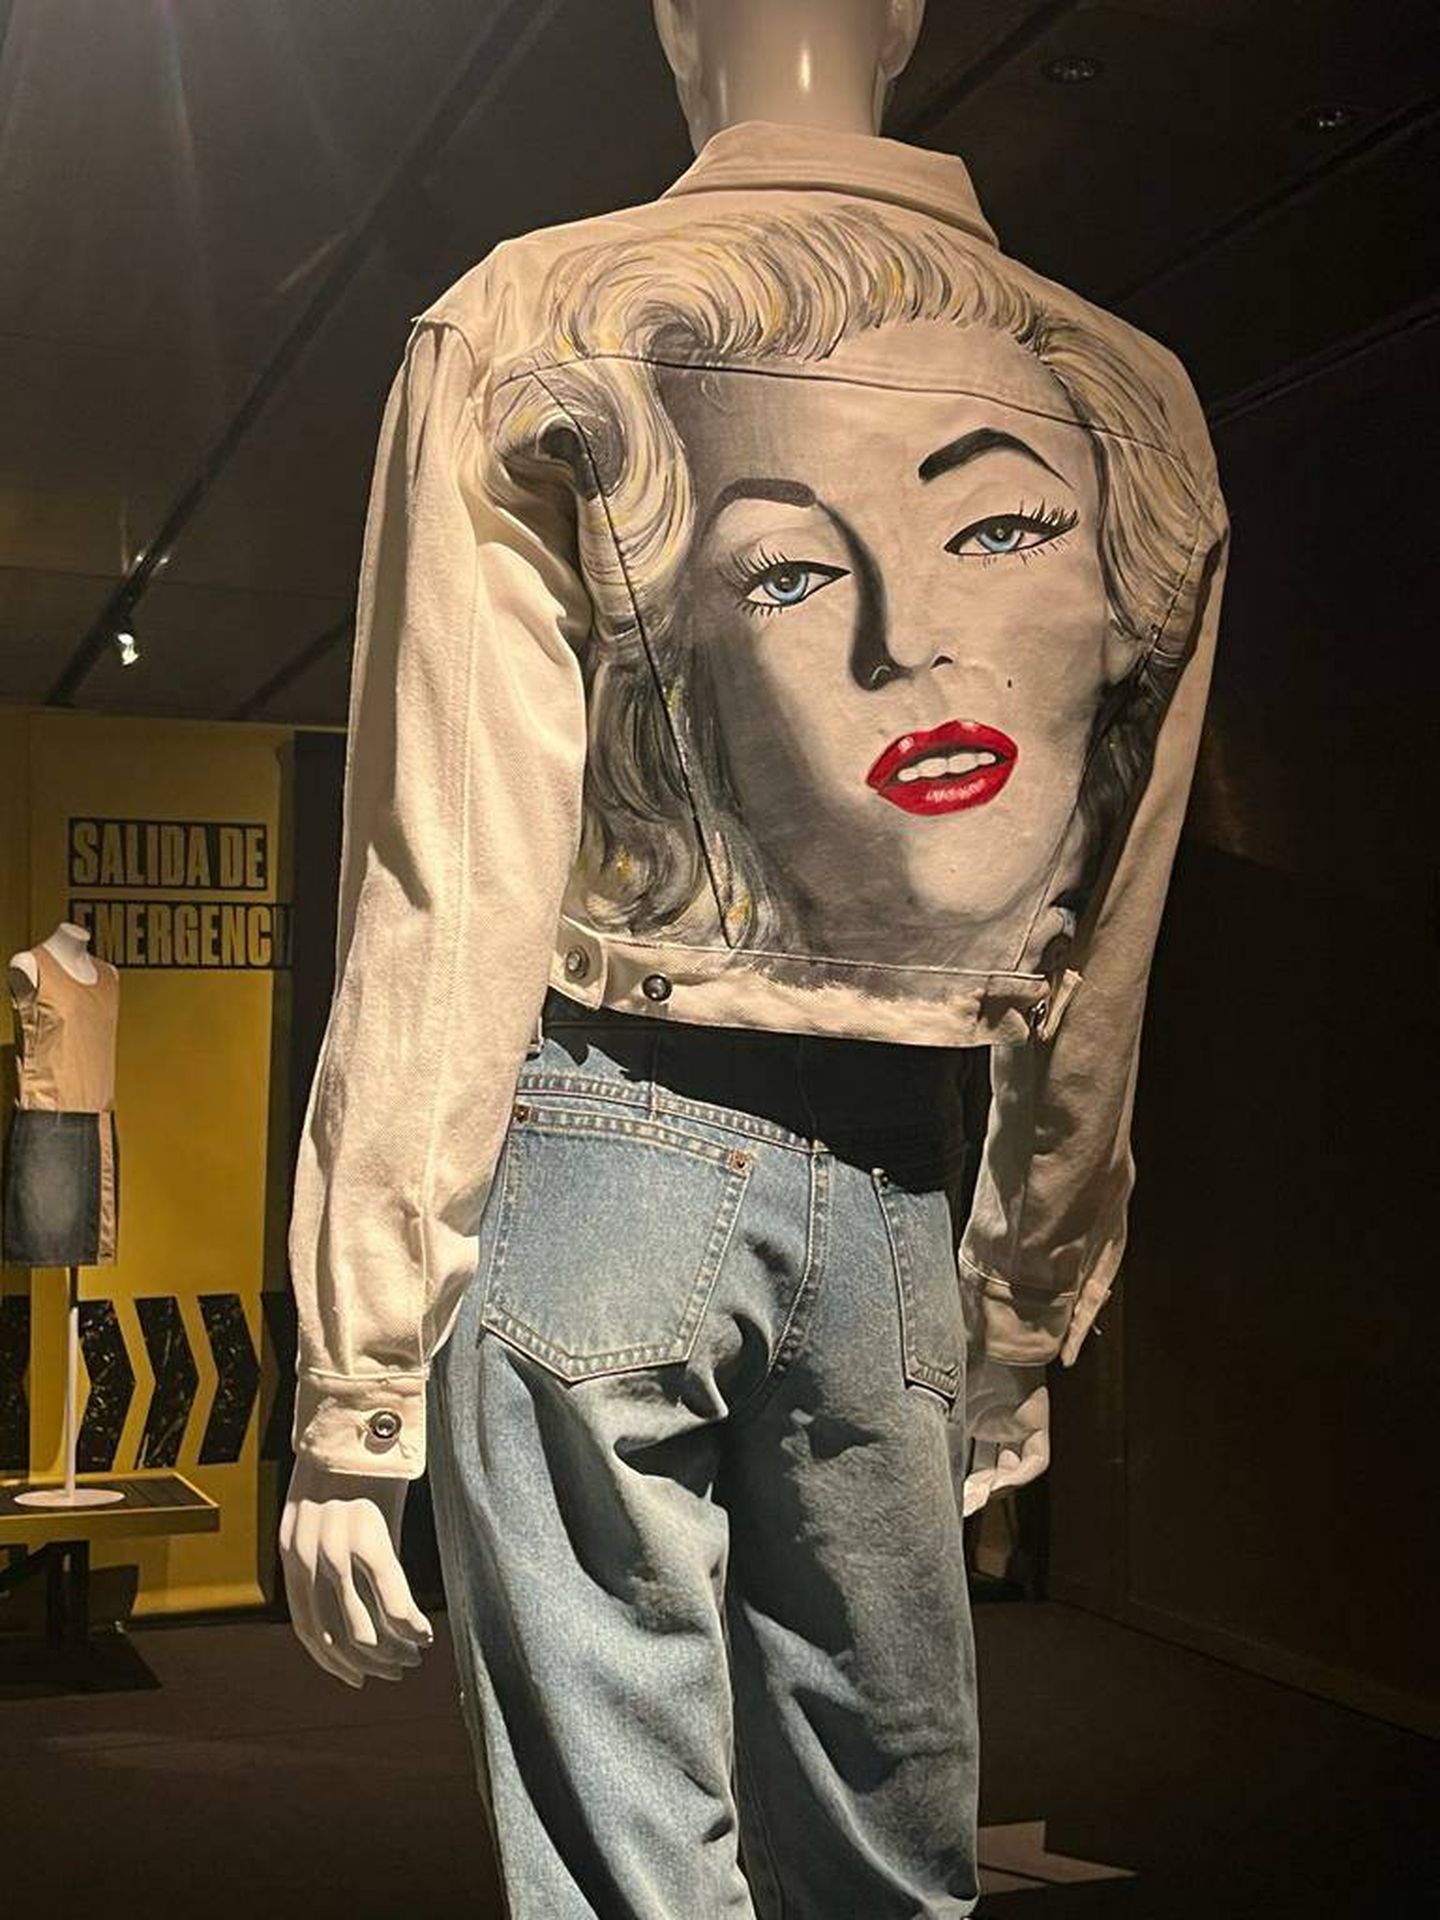 Una chaqueta vaquera estampada con la cara de Marilyn Monroe. (Vanitatis)